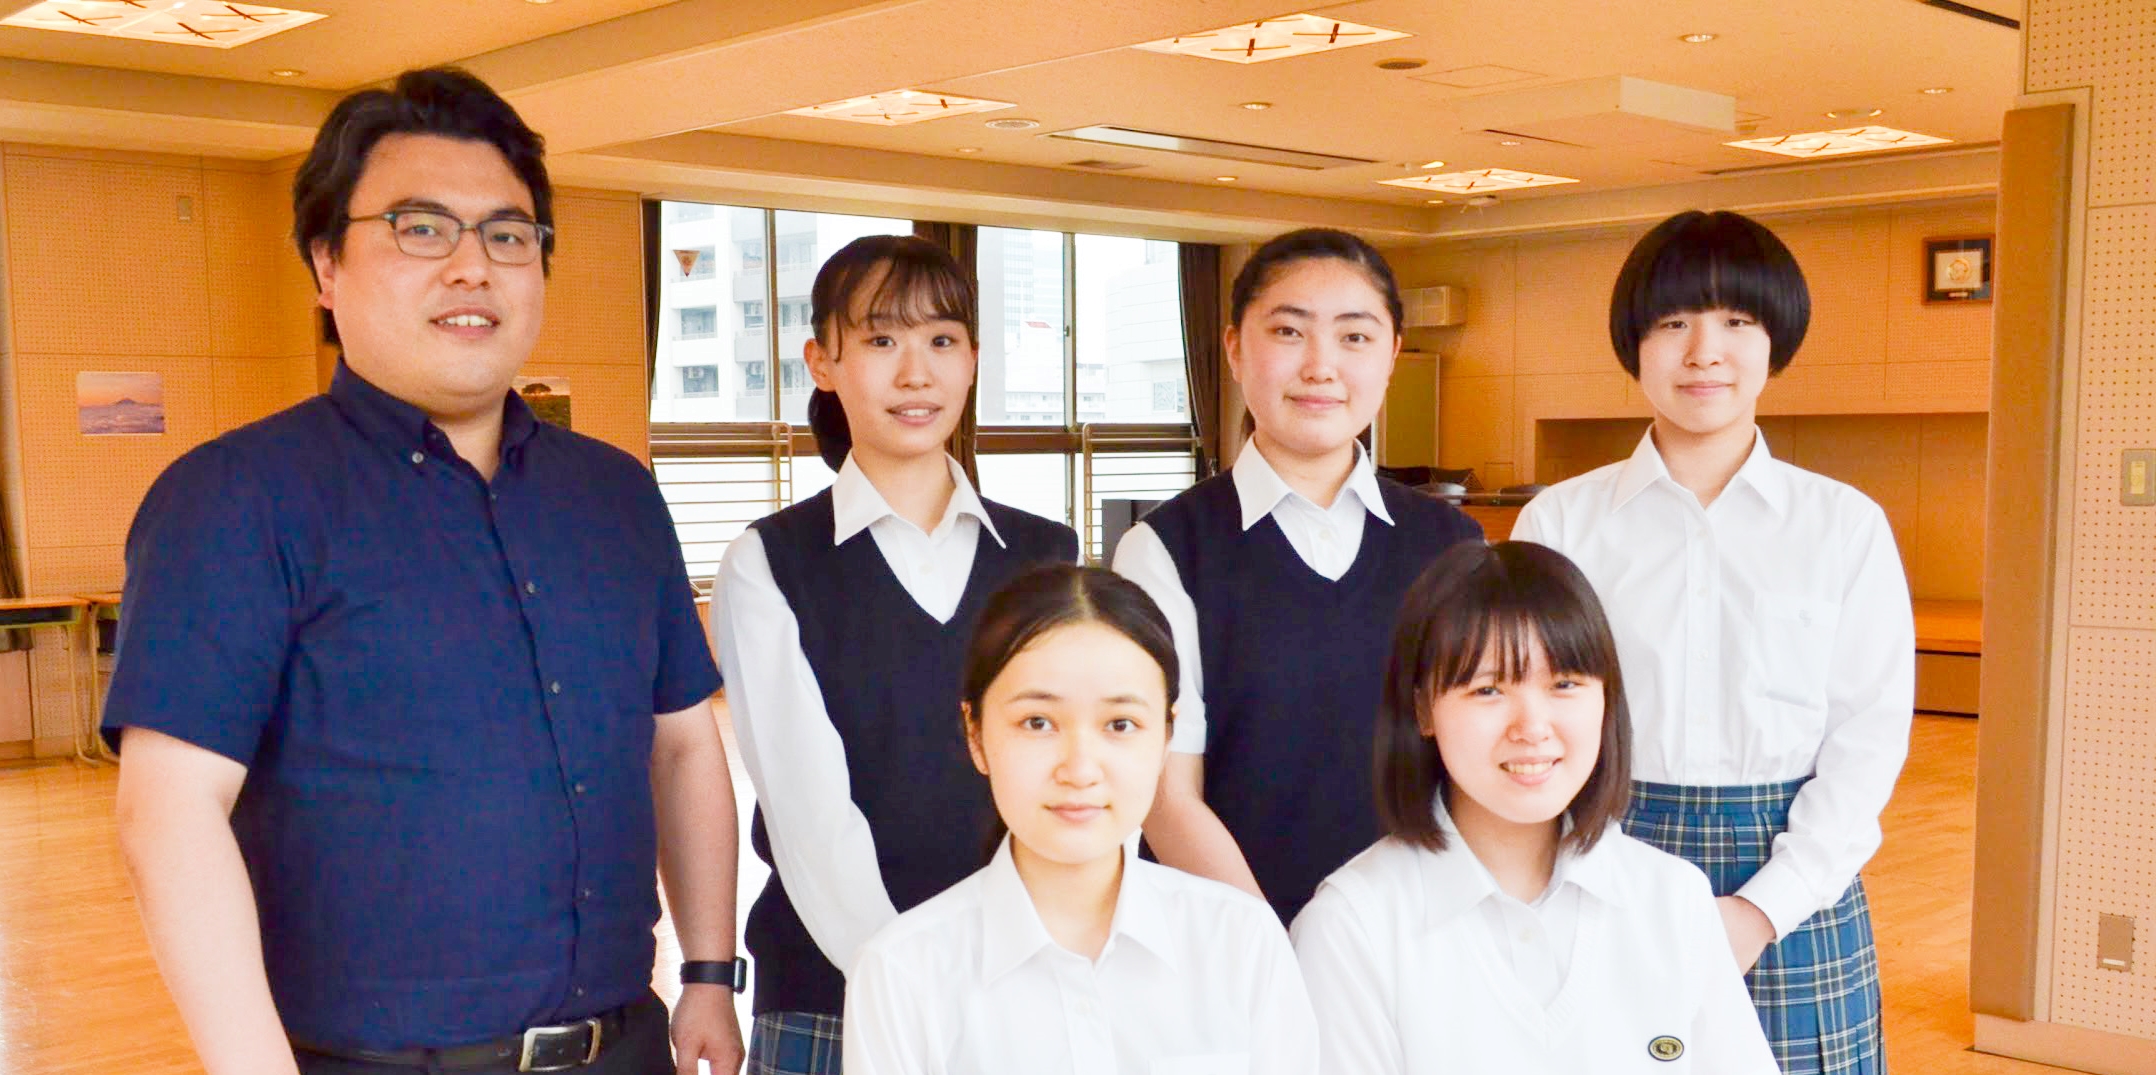 自分にできることをやっていく 貪欲さ が未来を変える 東京女子学園 Nec未来創造会議 座談会 ログミーbiz